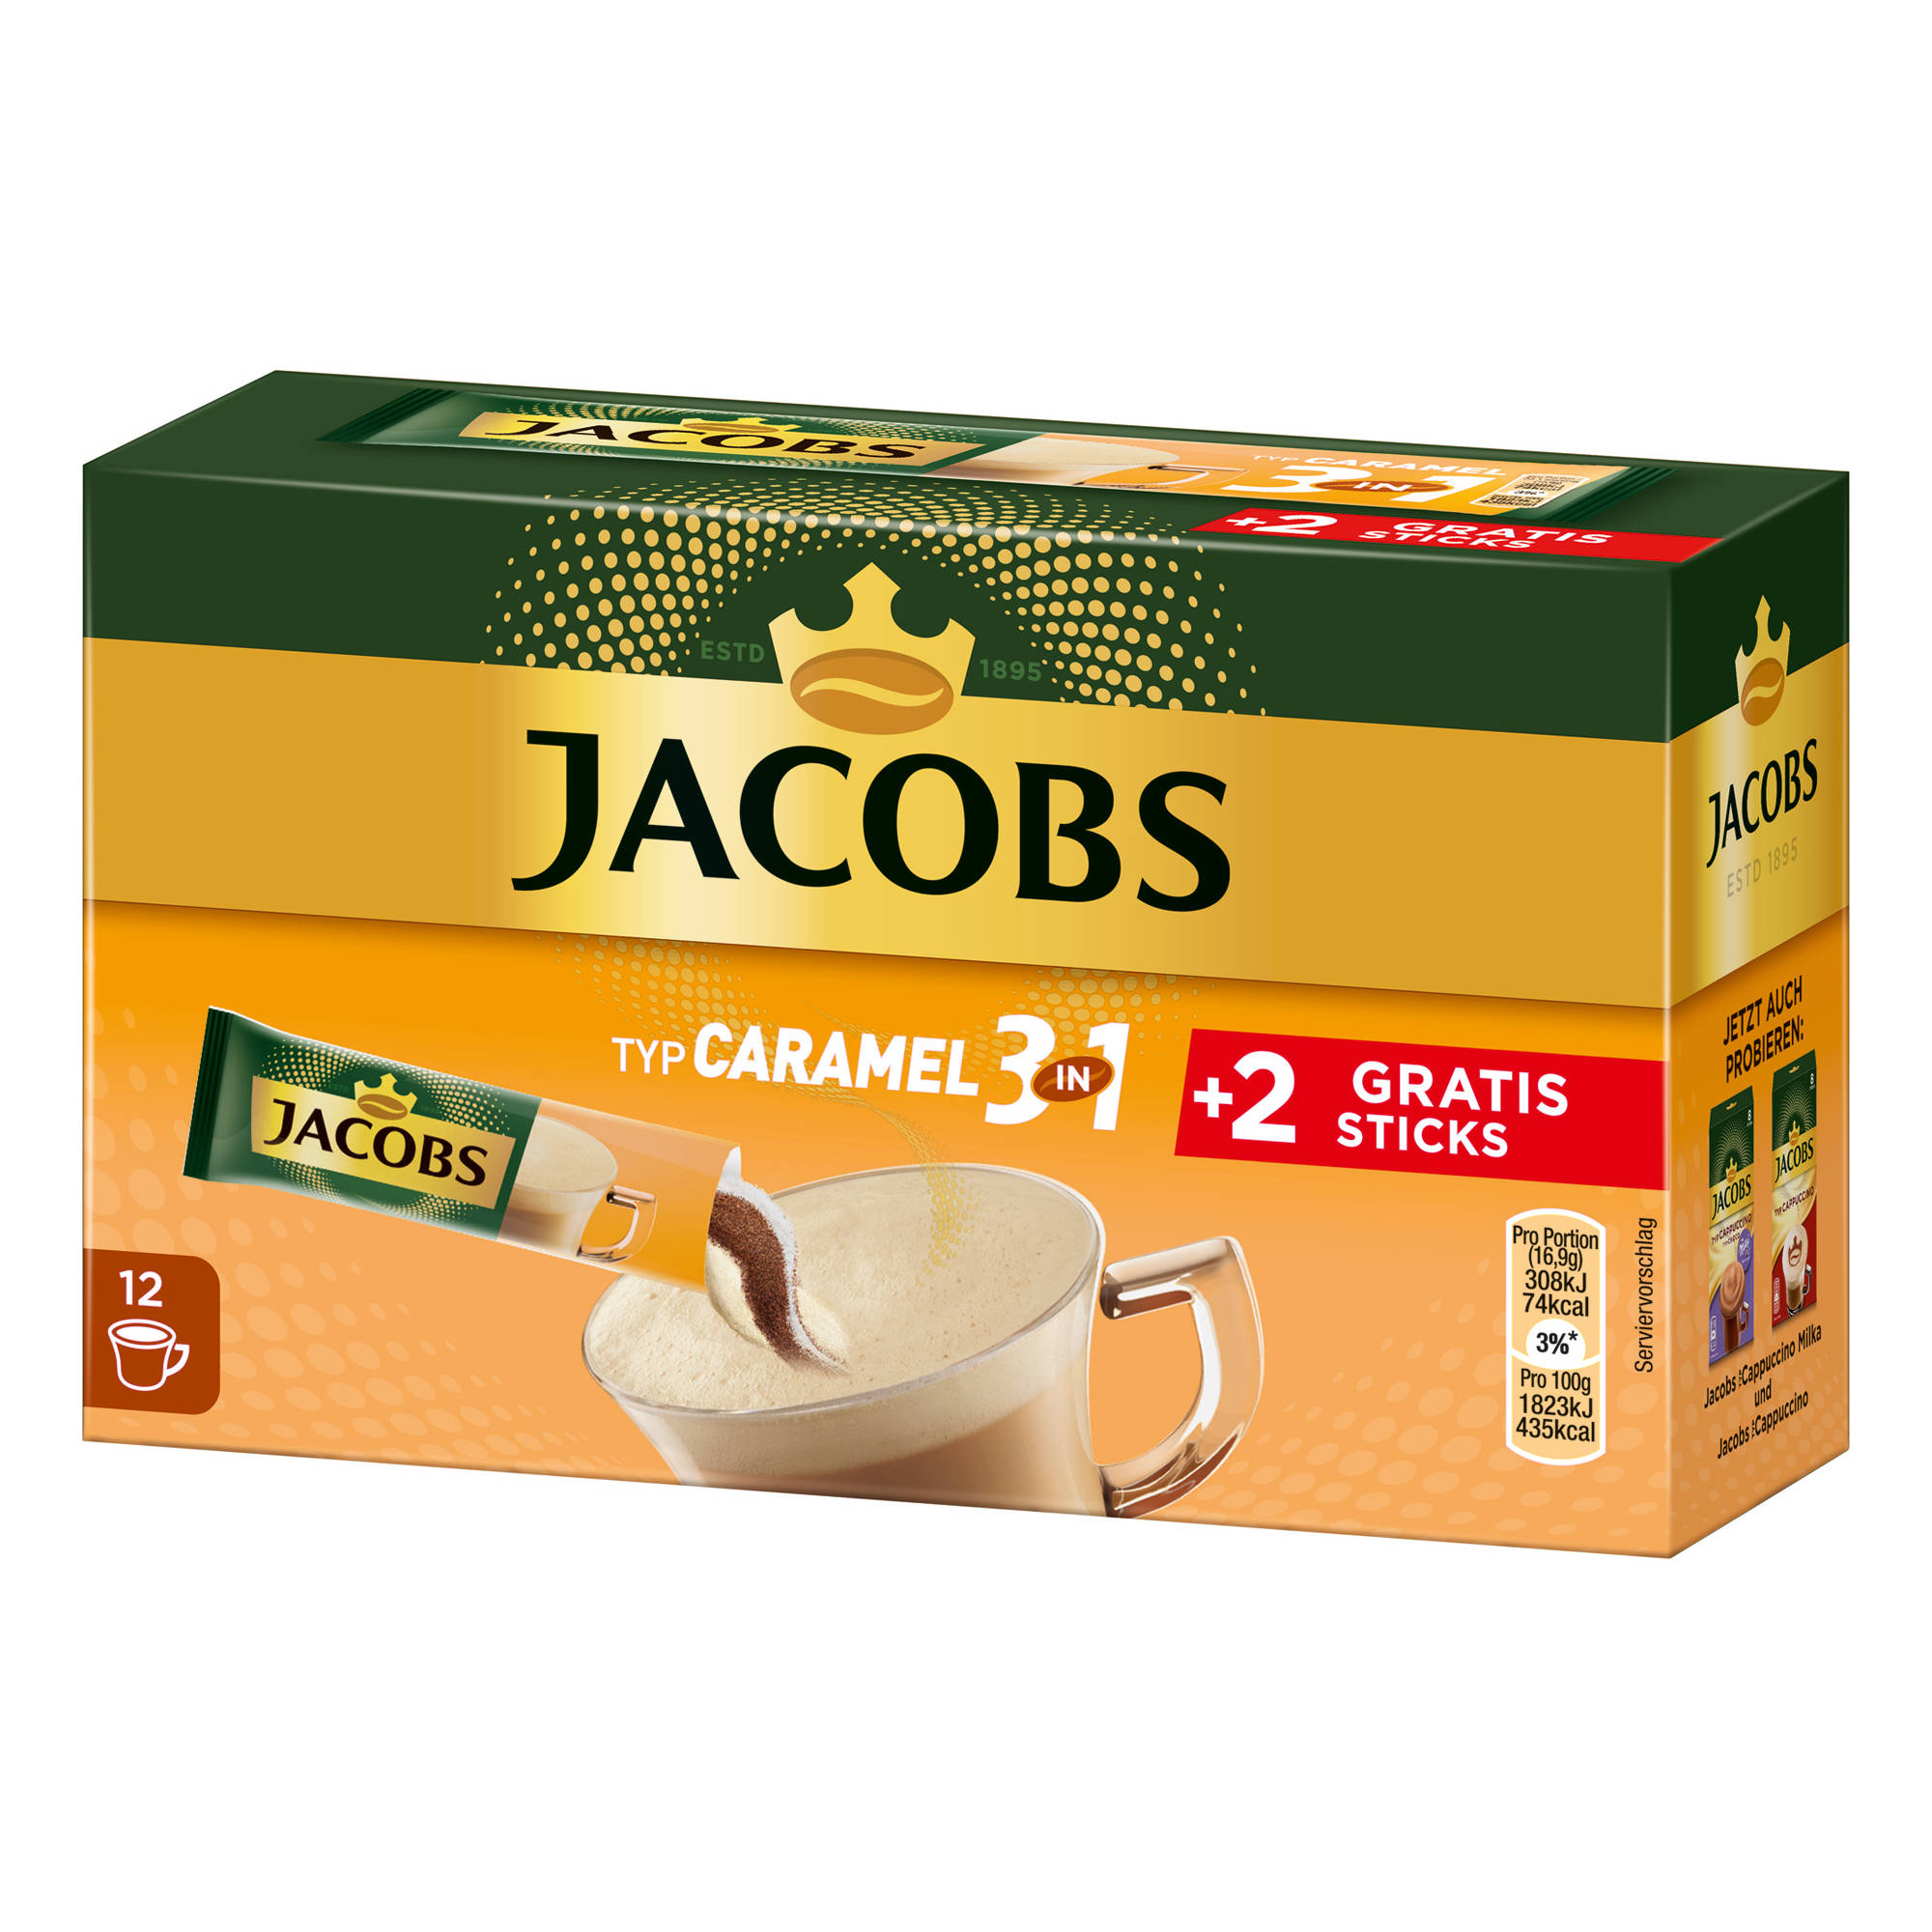 (In Caramel JACOBS 10+2 Getränke x Sticks 3in1 12 auflösen) heißem Instantkaffee Wasser Typ